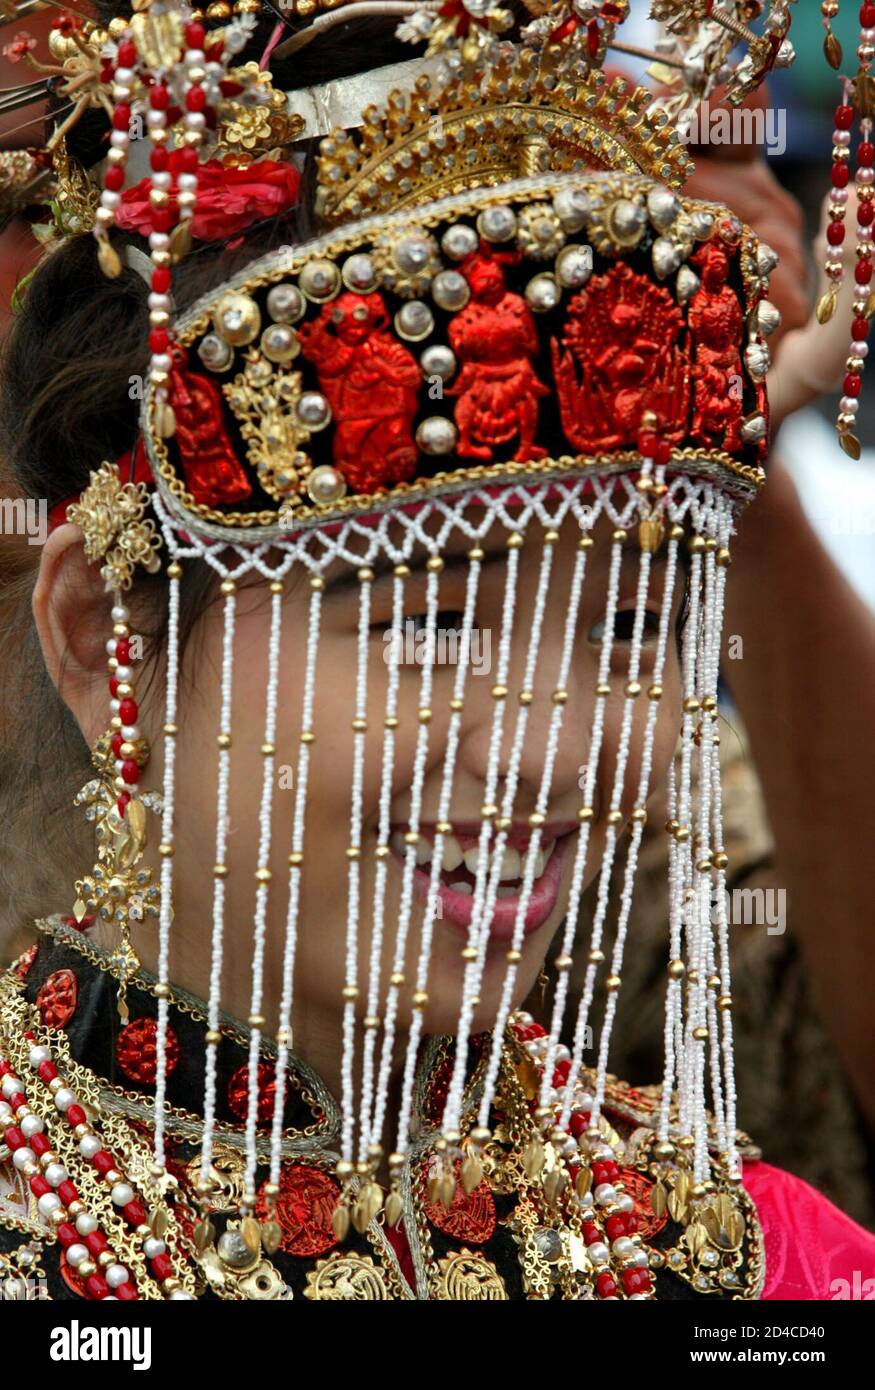 Eine Frau trägt die traditionelle Peranakan-Kleidung während eines Festivals einen Tag nach der CHAP-Goh-Meh-Feier, die das Ende des chinesischen Neujahrs markiert, in Jakartas Chinatown am 16. Februar 2003. Lokale Medien sagten, dass die Feierlichkeiten, zu denen auch eine Parade in Jakarta mit zehntausenden Teilnehmern gehörte, die ersten offenen Cap-Goh-Meh-Feierlichkeiten waren, seit chinesische kulturelle Aktivitäten vor 40 Jahren verboten wurden. Die Peranakans sind Nachfahren einer frühen chinesischen Gemeinschaft, die sich ab dem 17. Jahrhundert im malaiischen Archipel niederließ. REUTERS/Darren Whiteside Stockfoto